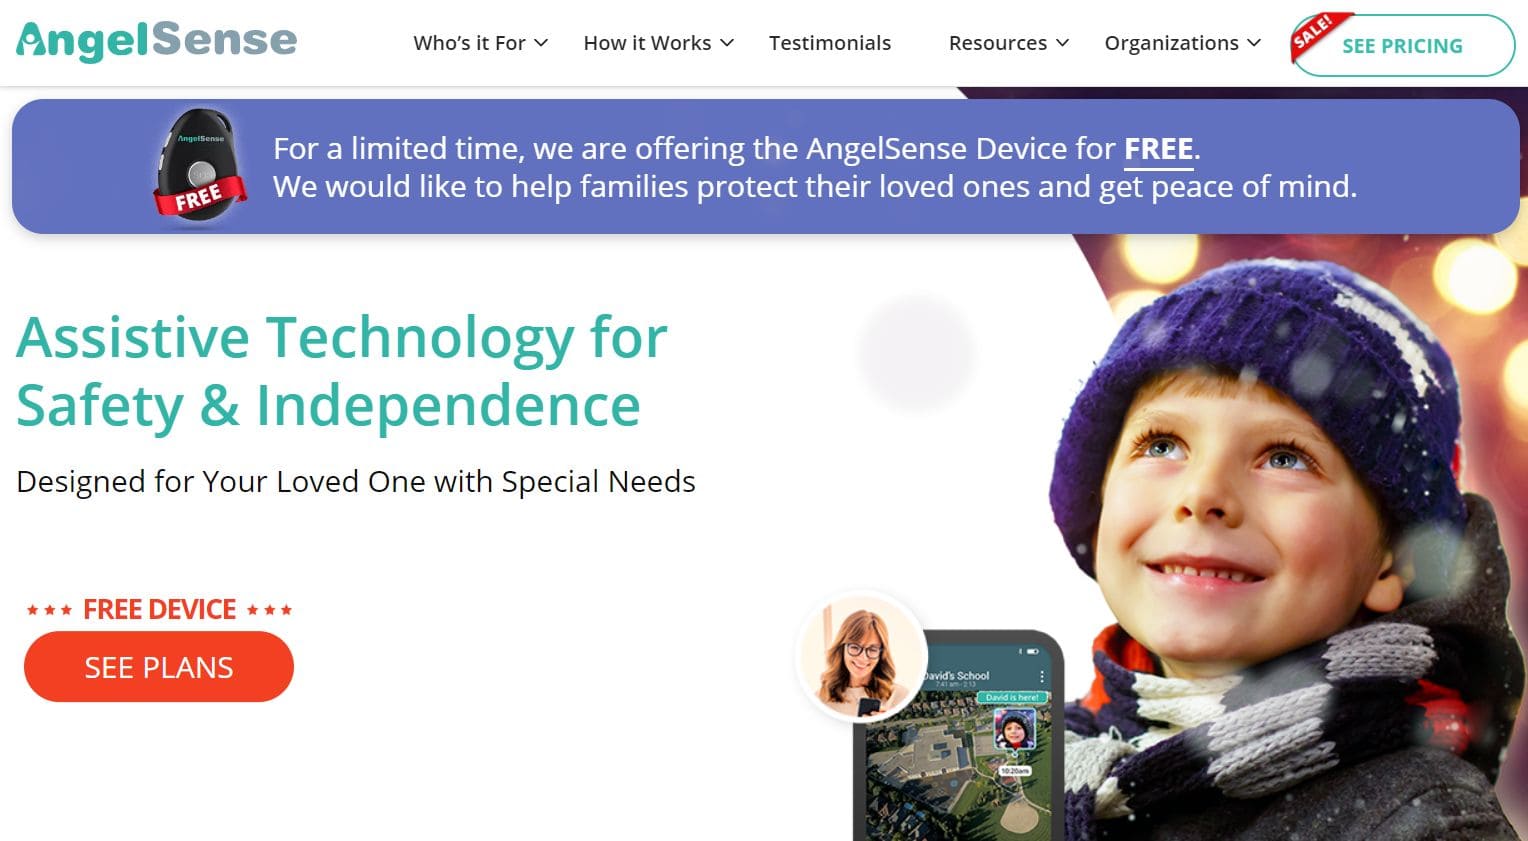 Vista della home page del sito web per informazioni sulla tecnologia assistiva per le persone con autismo